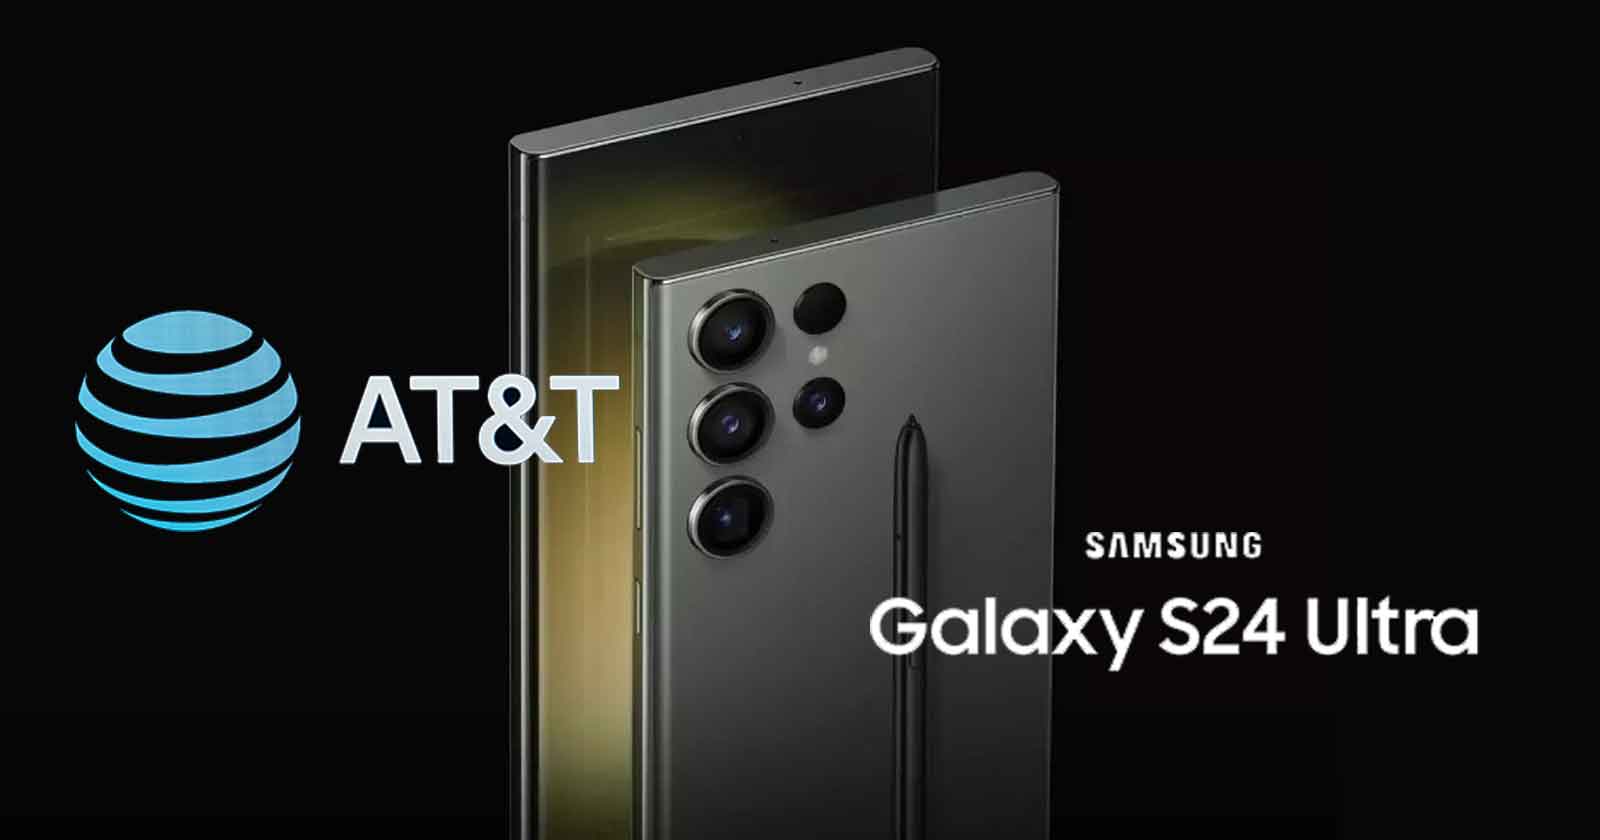 AT&T Samsung Galaxy S24 Series